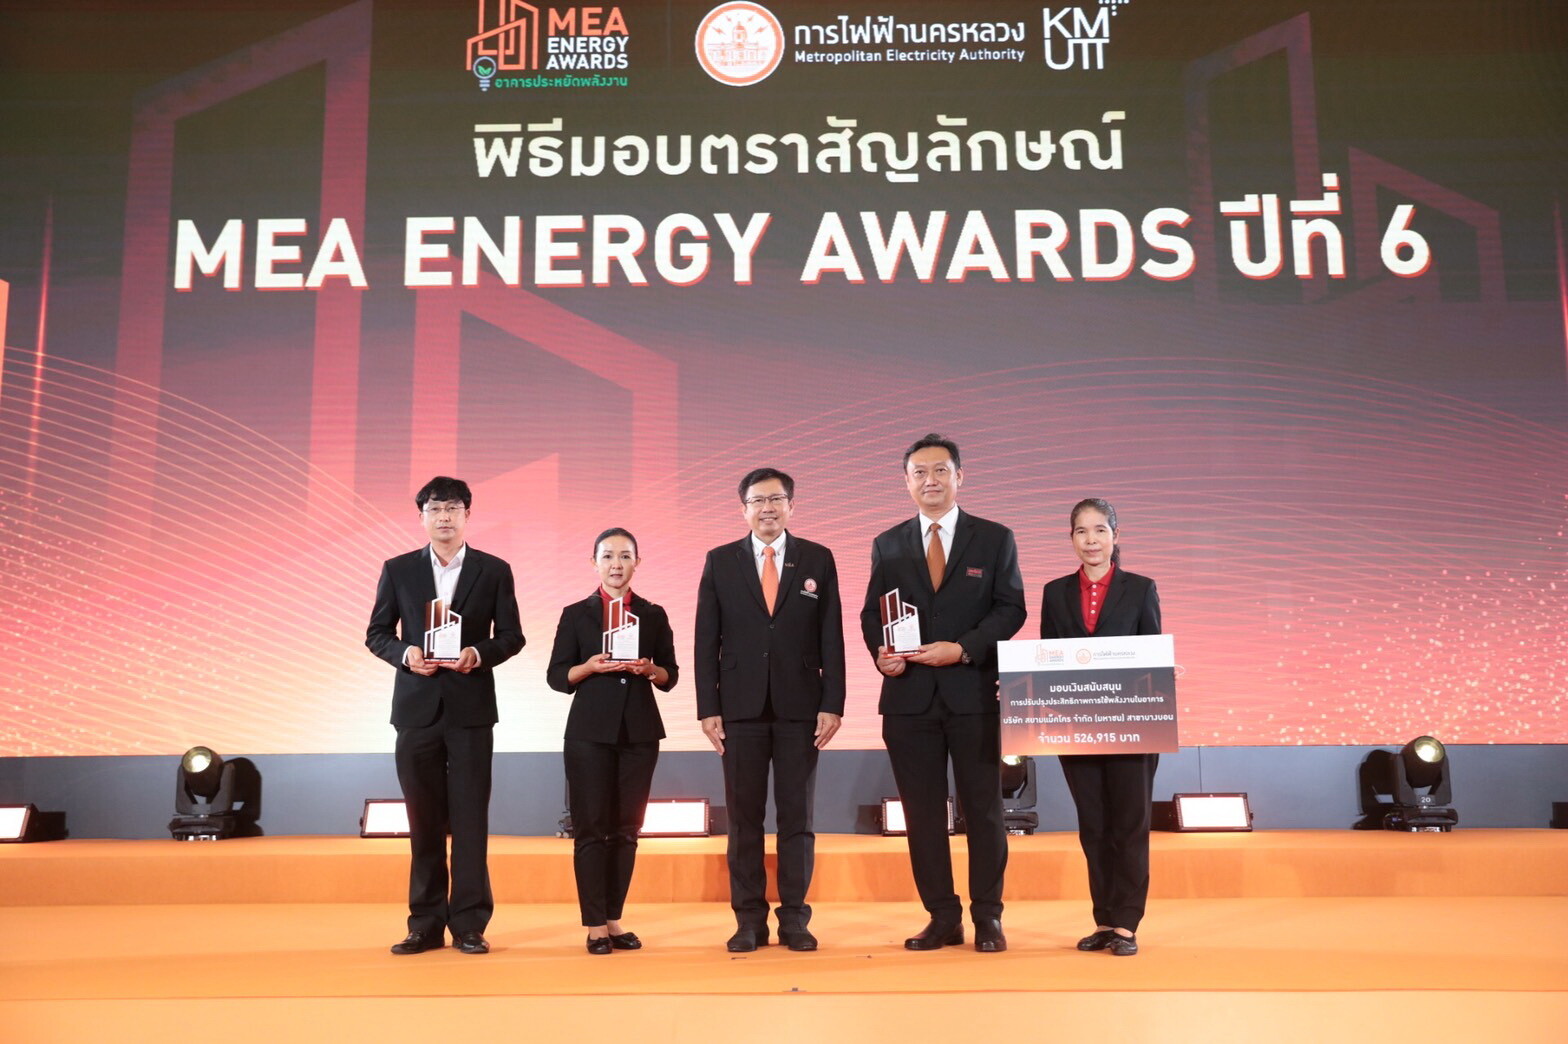 แม็คโครคว้า 3 รางวัลอาคารประหยัดพลังงาน "MEA Energy Awards" เดินหน้าขับเคลื่อนนโยบายเพื่อสิ่งแวดล้อมเต็มพิกัด